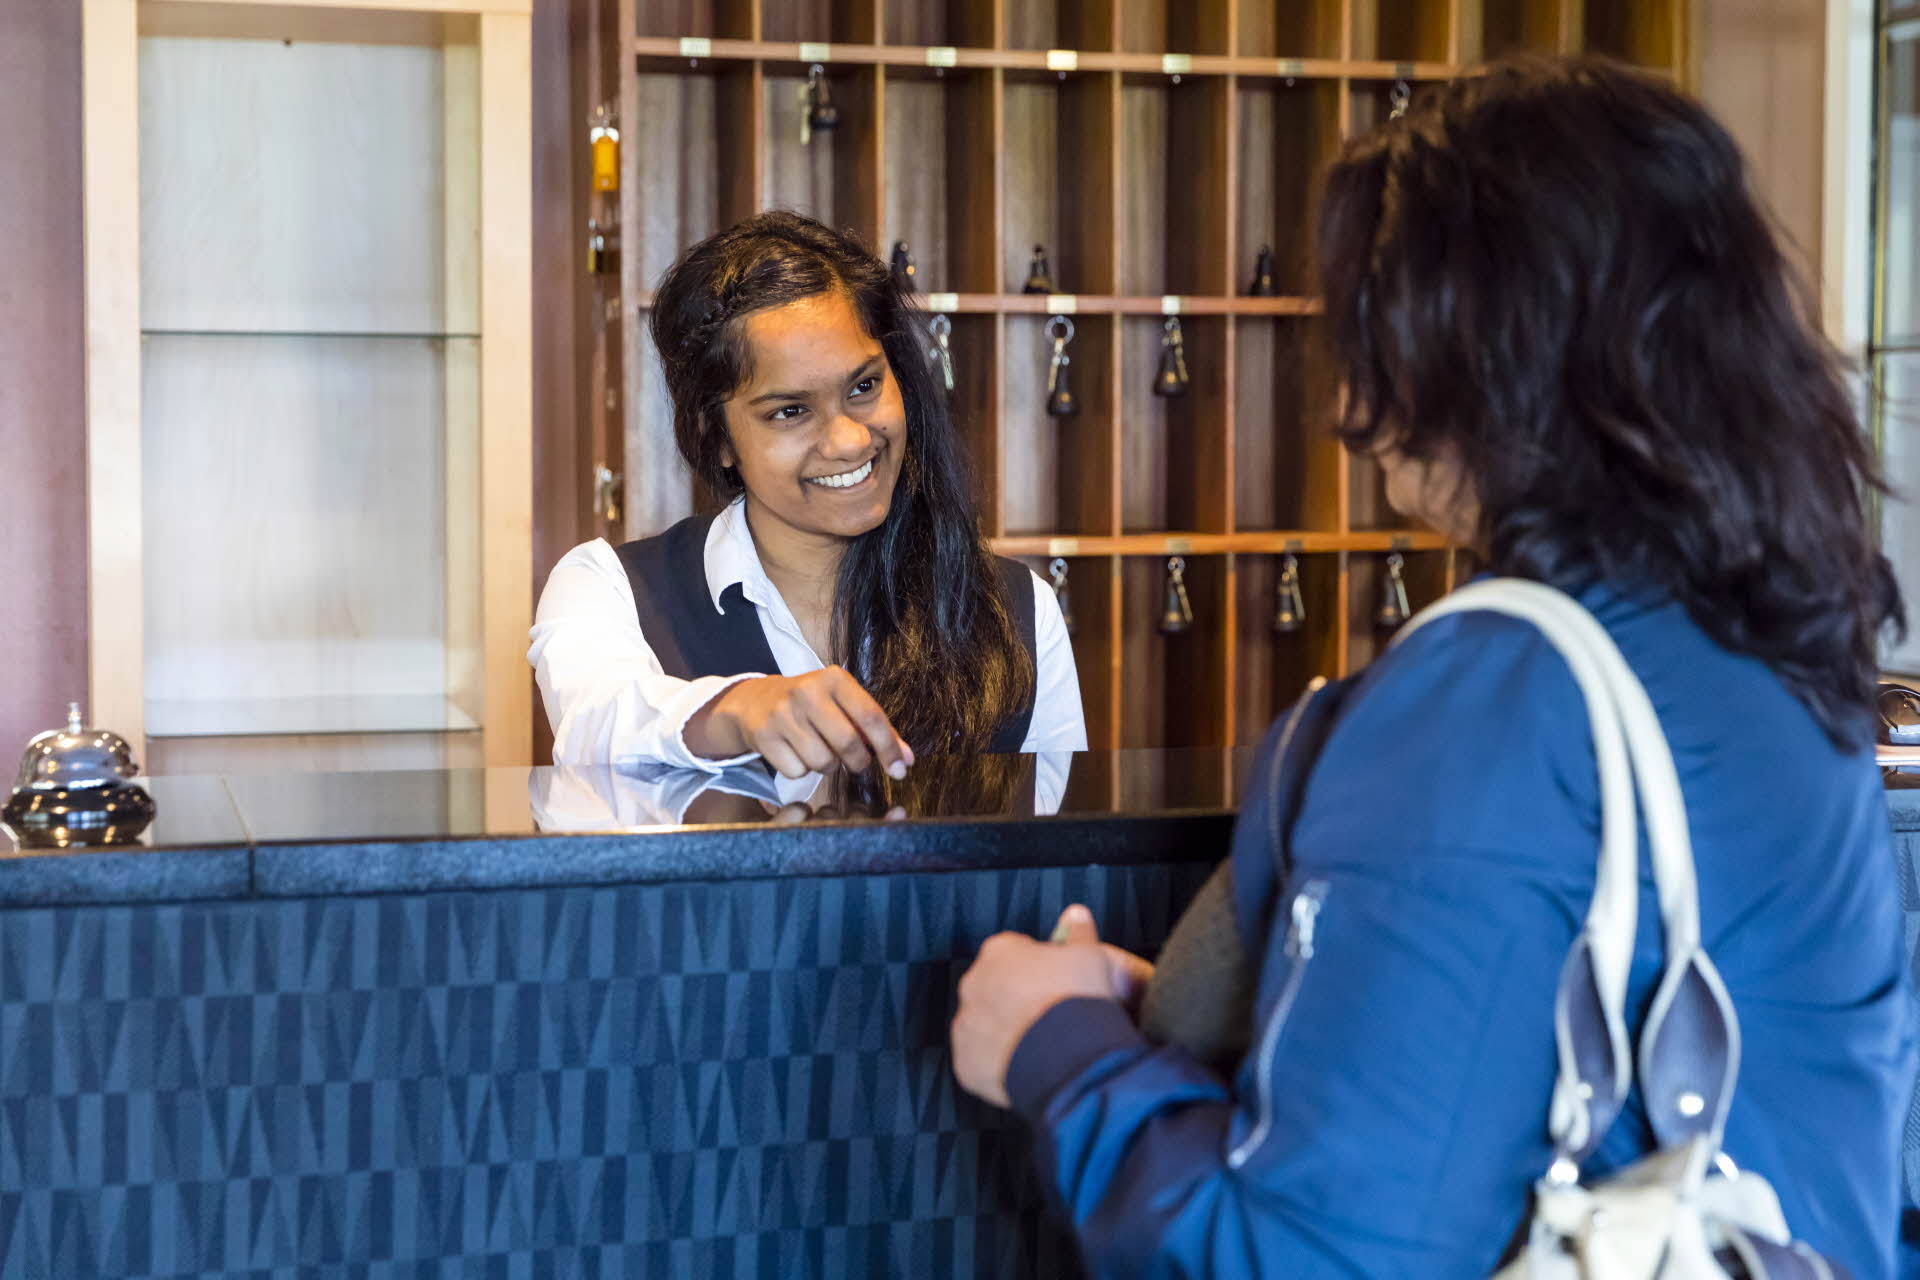 Une femme vêtue d’une veste bleue à la réception. Une réceptionniste souriante lui remettant une clé.